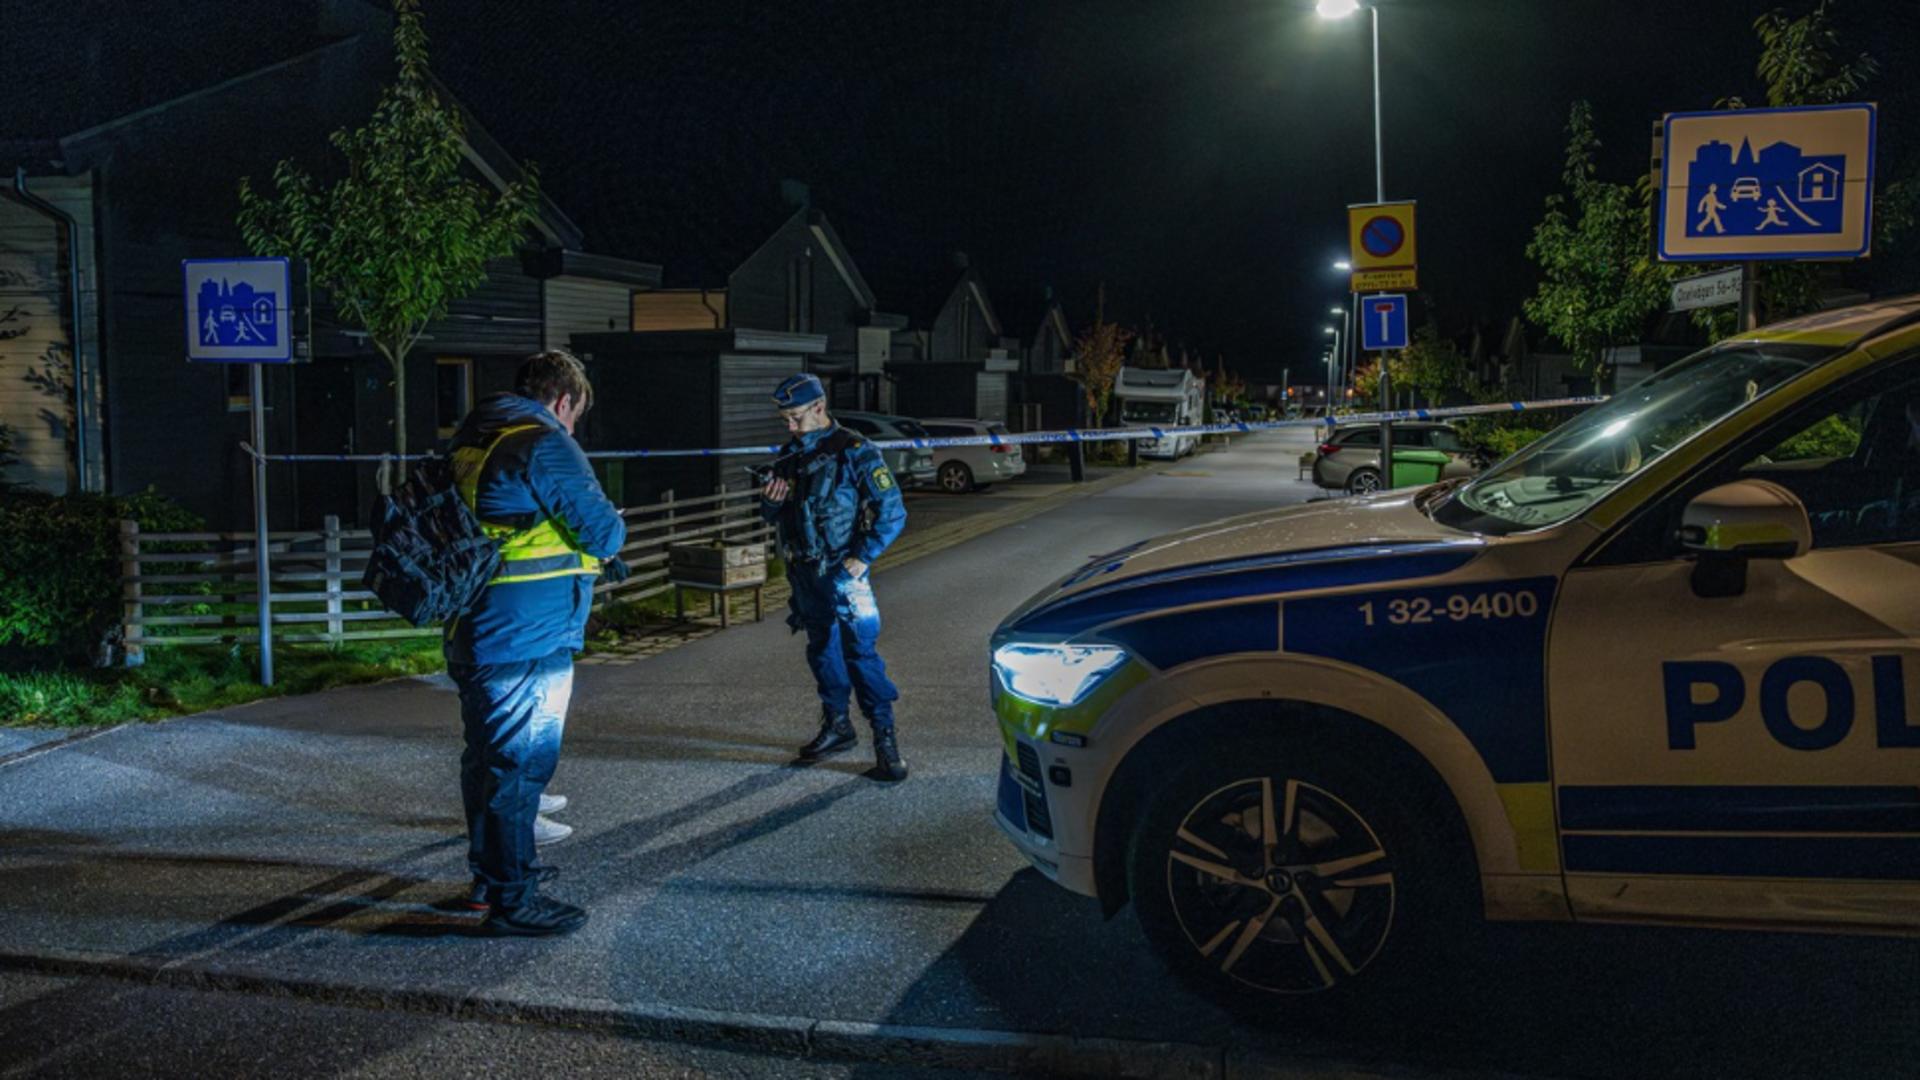 Dublă crimă în Stockholm! Două femei au fost împușcate de un bărbat înarmat care a intrat peste ele în casă